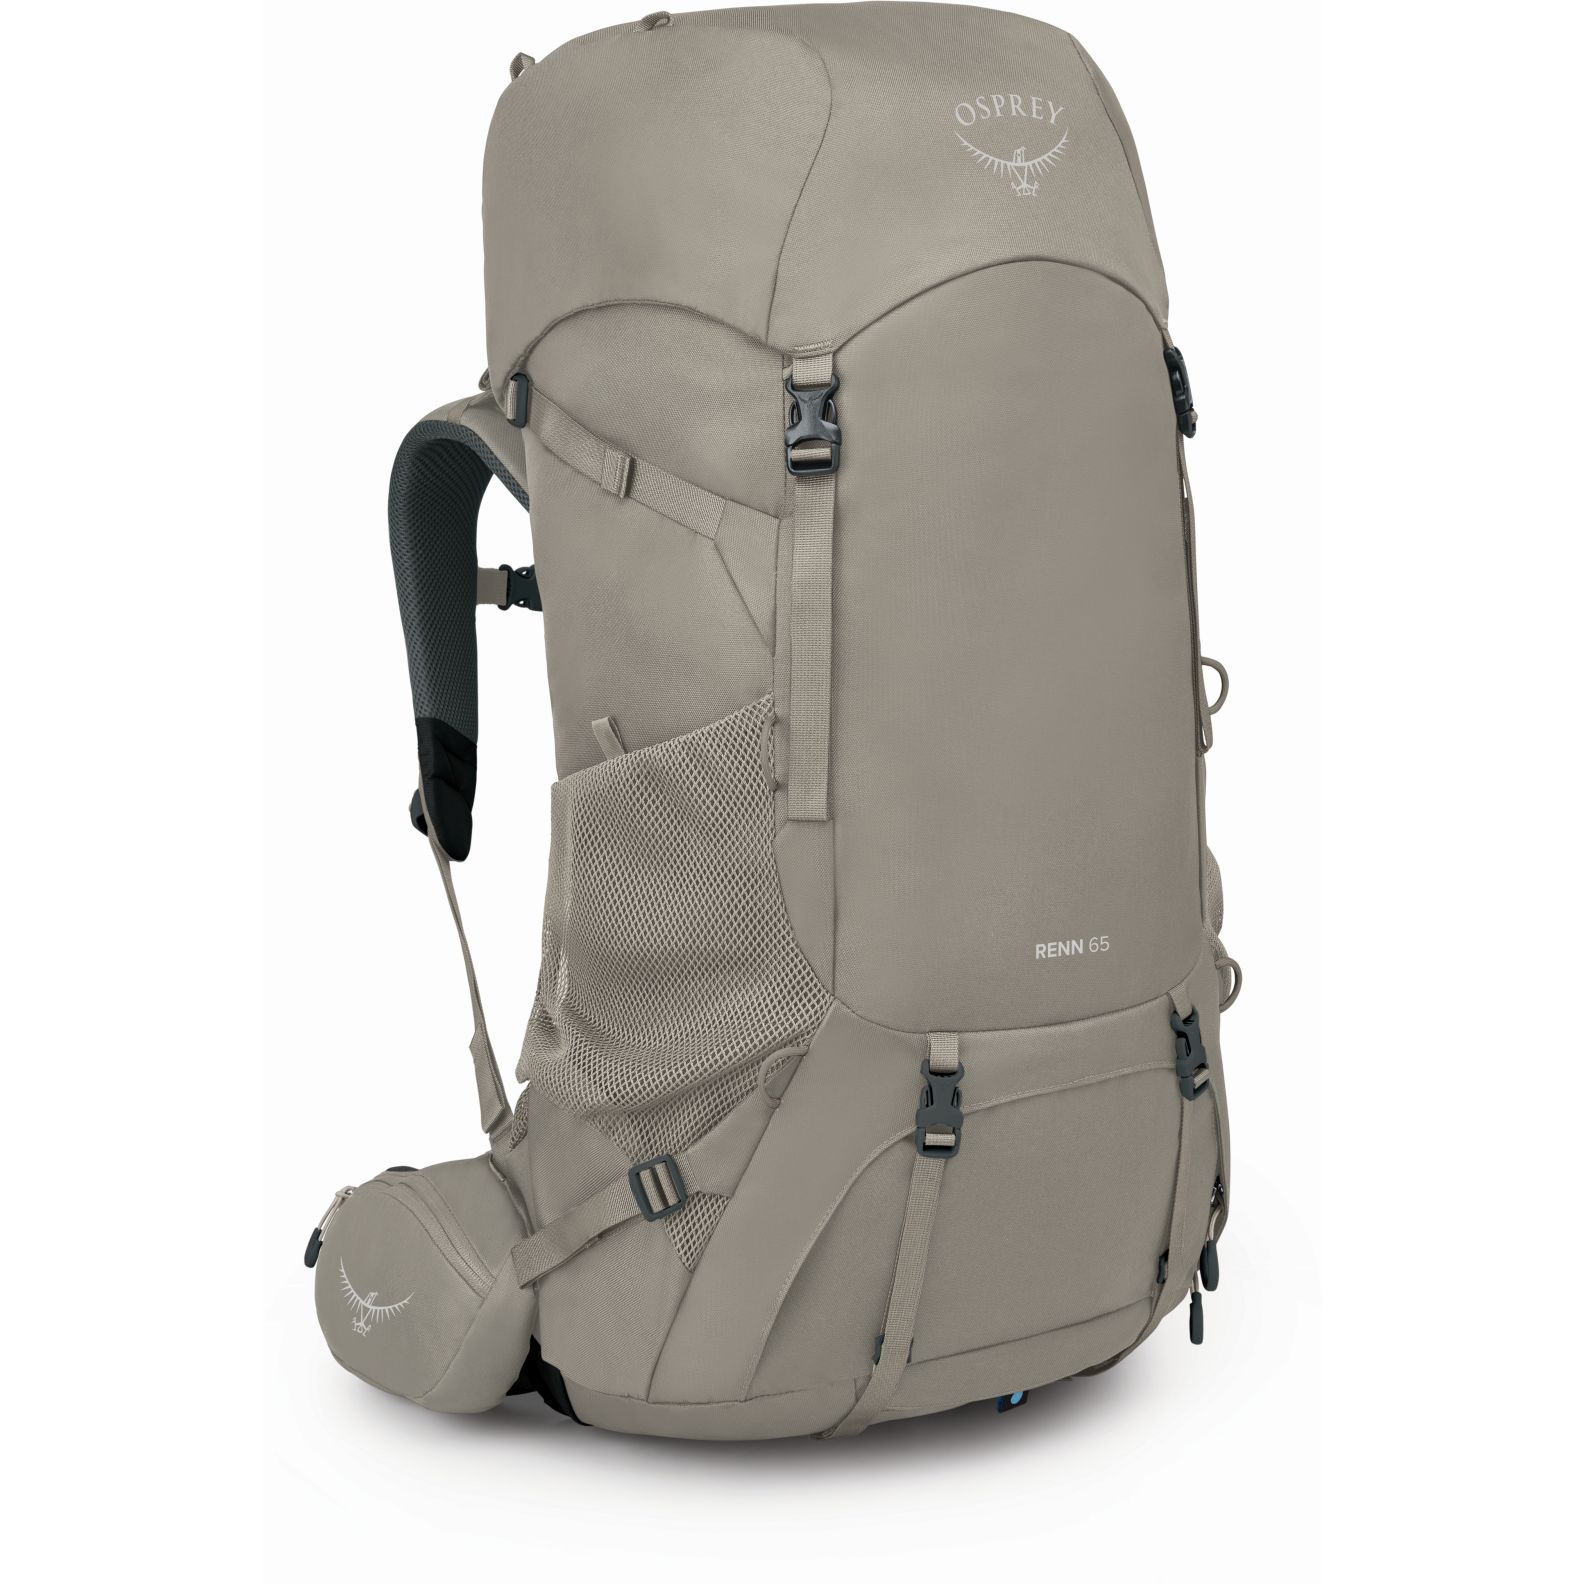 Produktbild von Osprey Renn 65 Trekking Rucksack Damen - Pediment Grey/Linen Tan